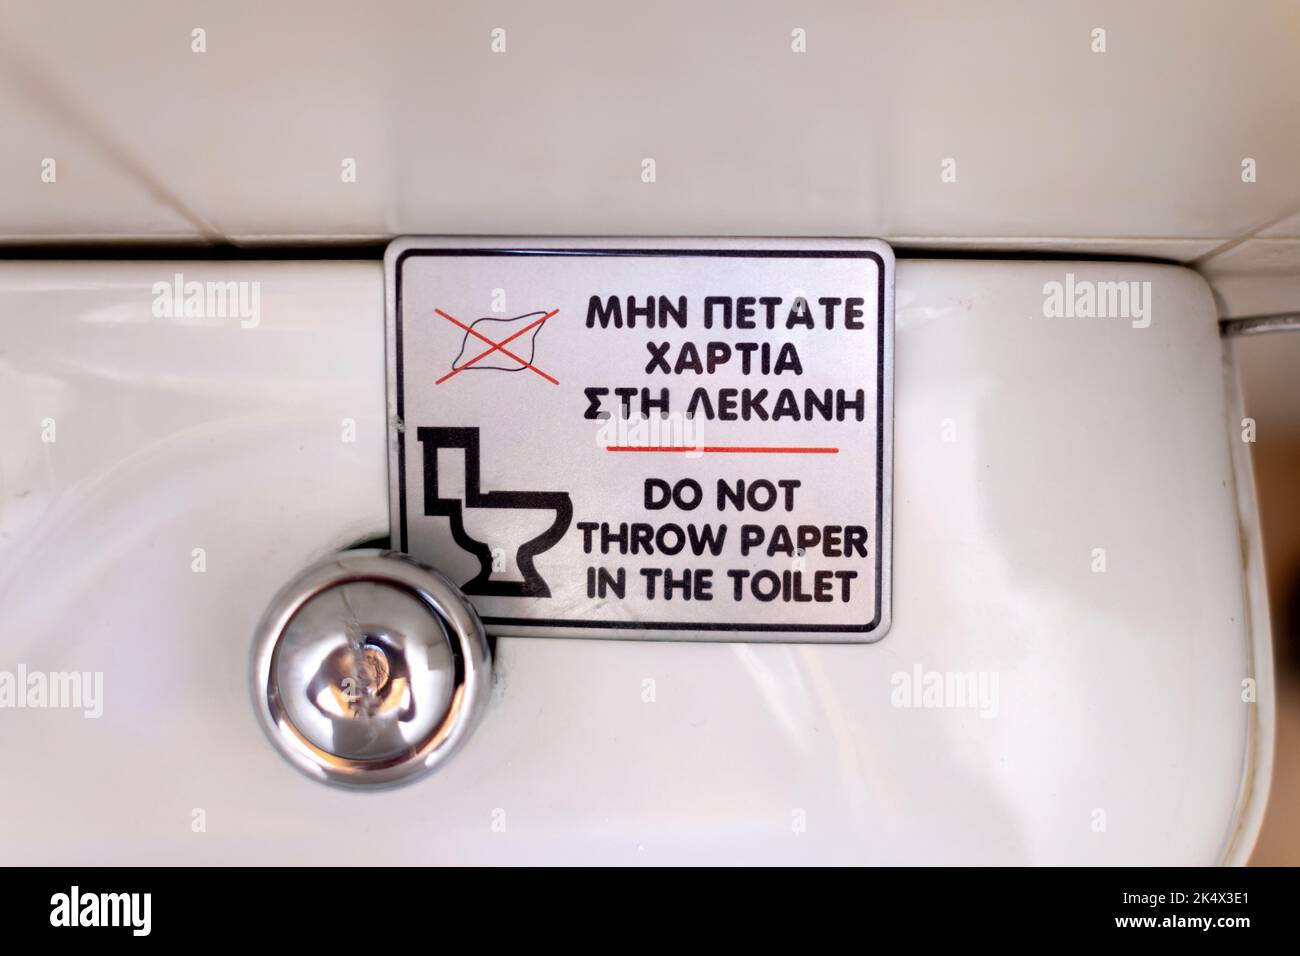 Ein Schild auf einer griechischen Toilettenzisterne, auf dem Leute, die die Toilette benutzen, aufgefordert werden, kein Toilettenpapier in die Toilette zu legen. Gespültes Papier kann Rohre blockieren Stockfoto